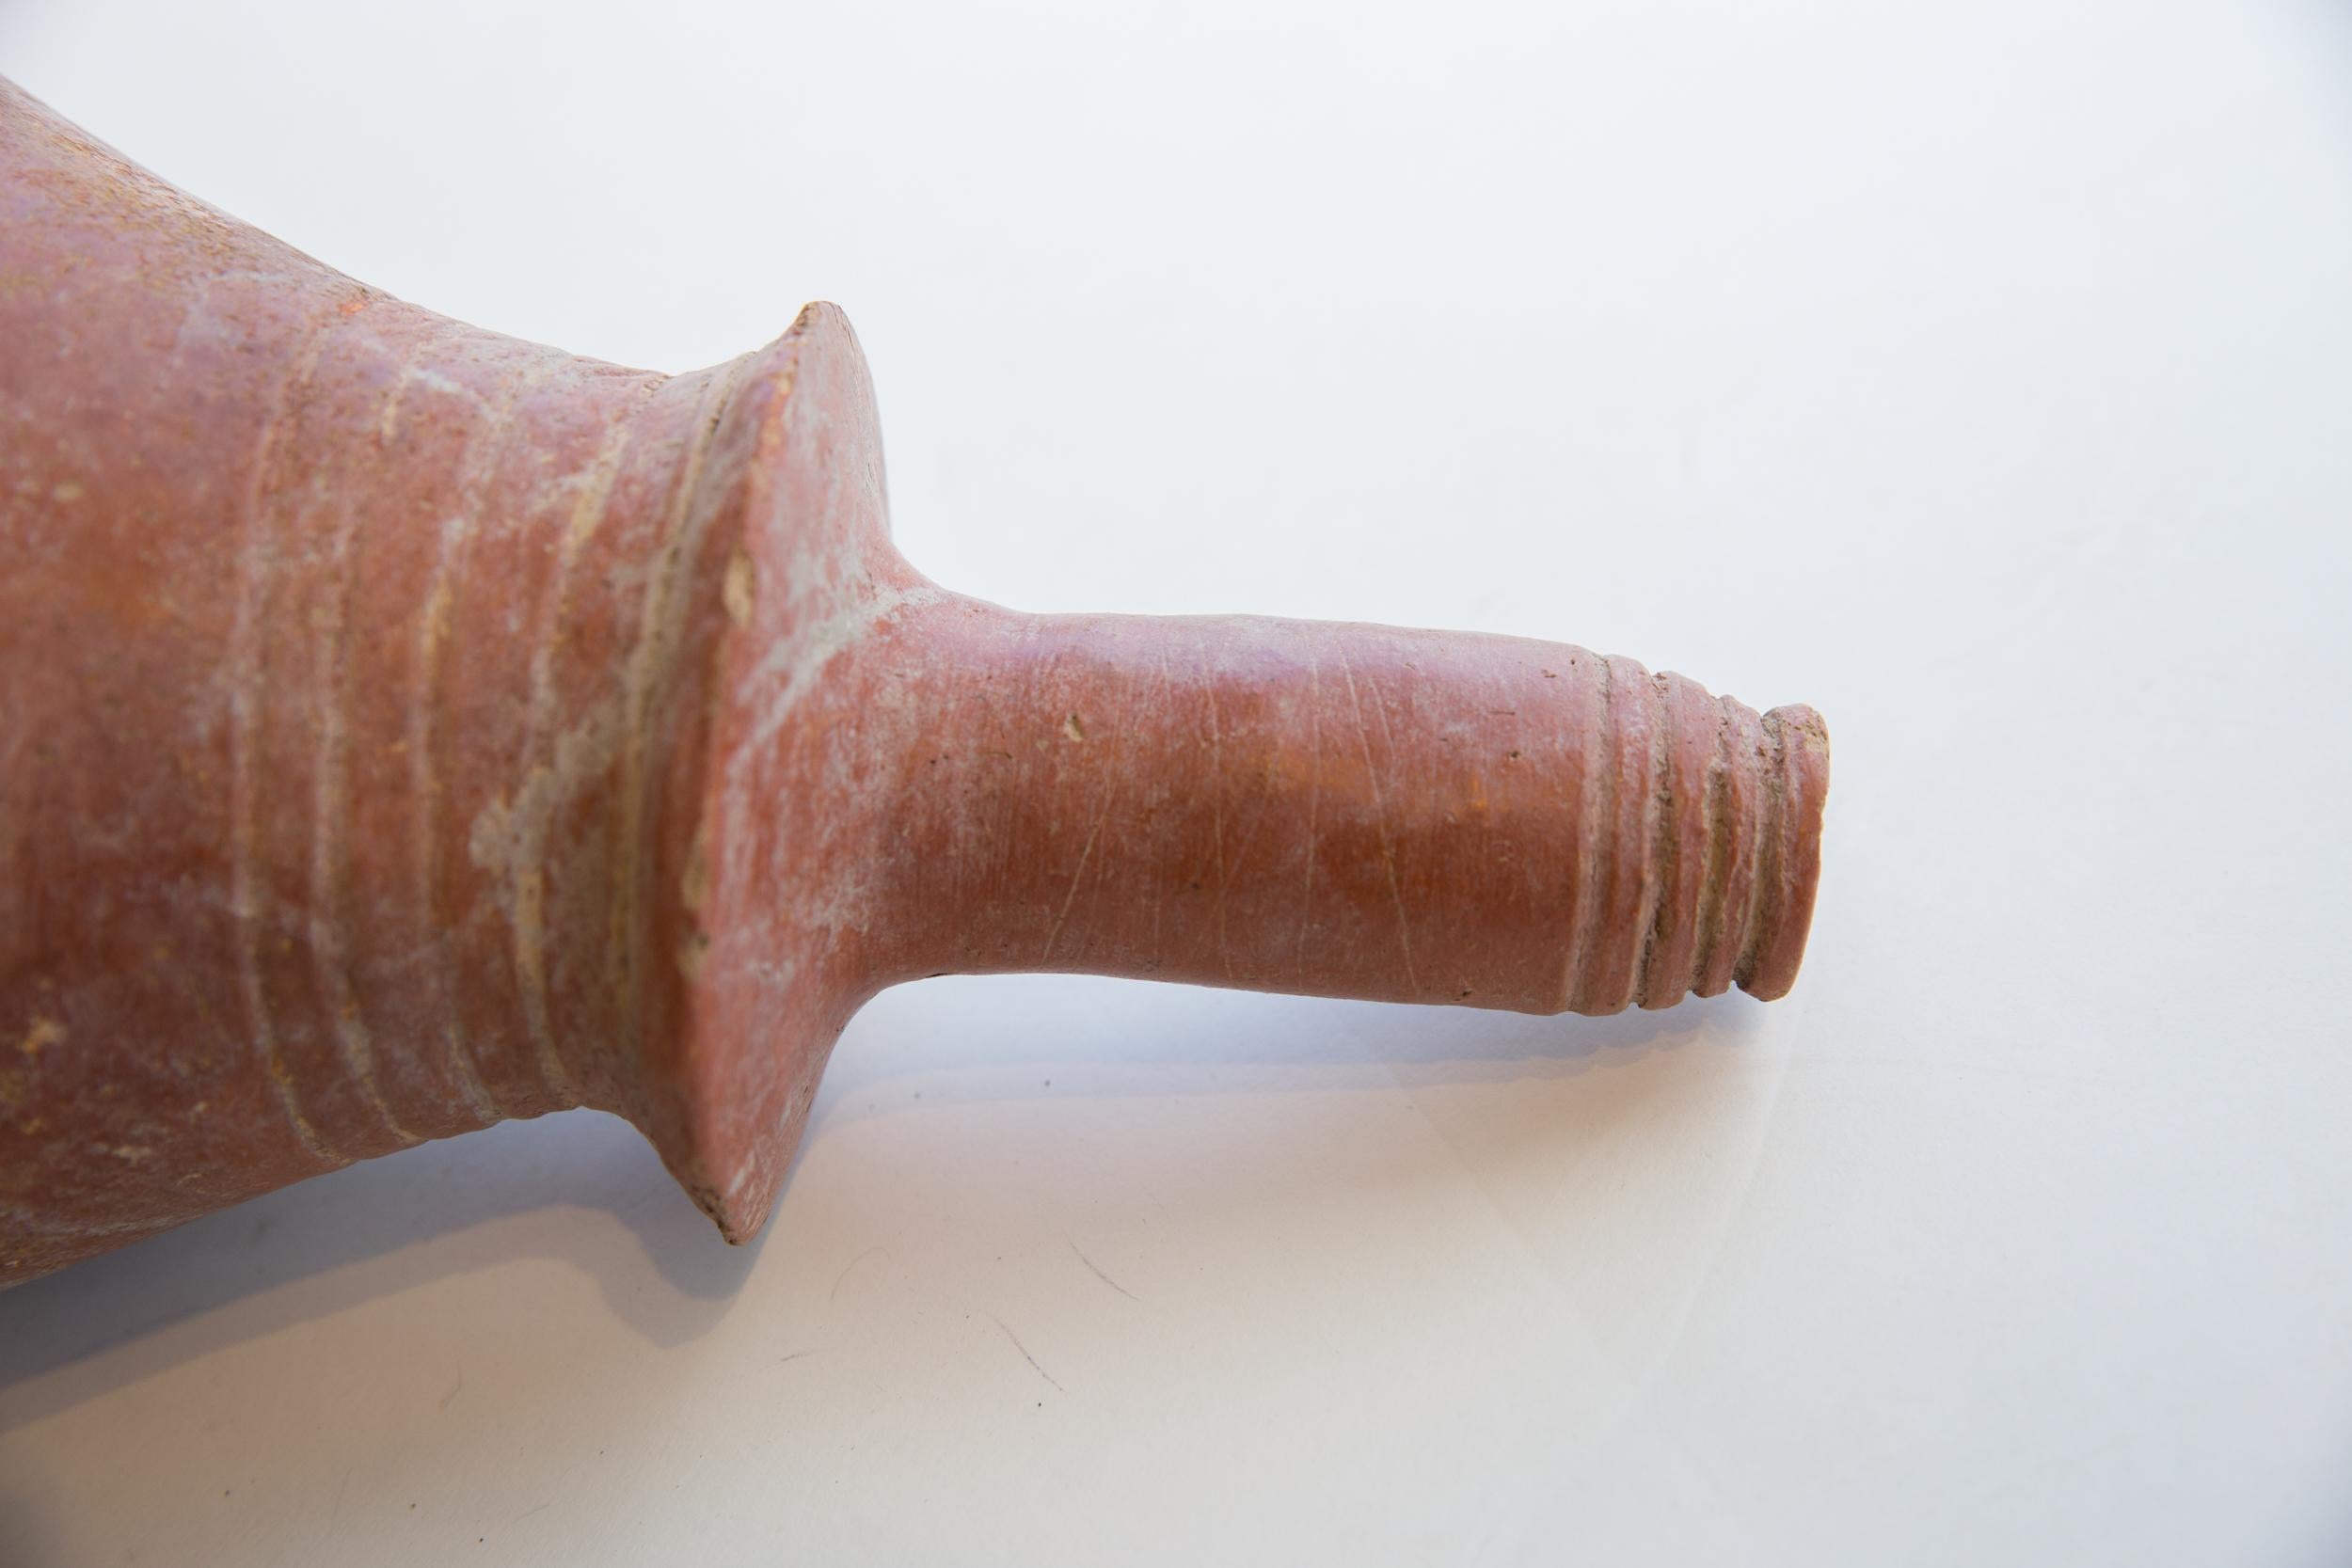 Antike handgefertigte Vase aus afrikanischer roter Schlickerware. CIRCA 300-600 n. Chr. (AD), dieses schöne handgefertigte Stück rote Schlickerware Keramik wurde in Nordafrika handgefertigt. Dieses Stück ist ein einzigartiges Sammlerstück, das mit